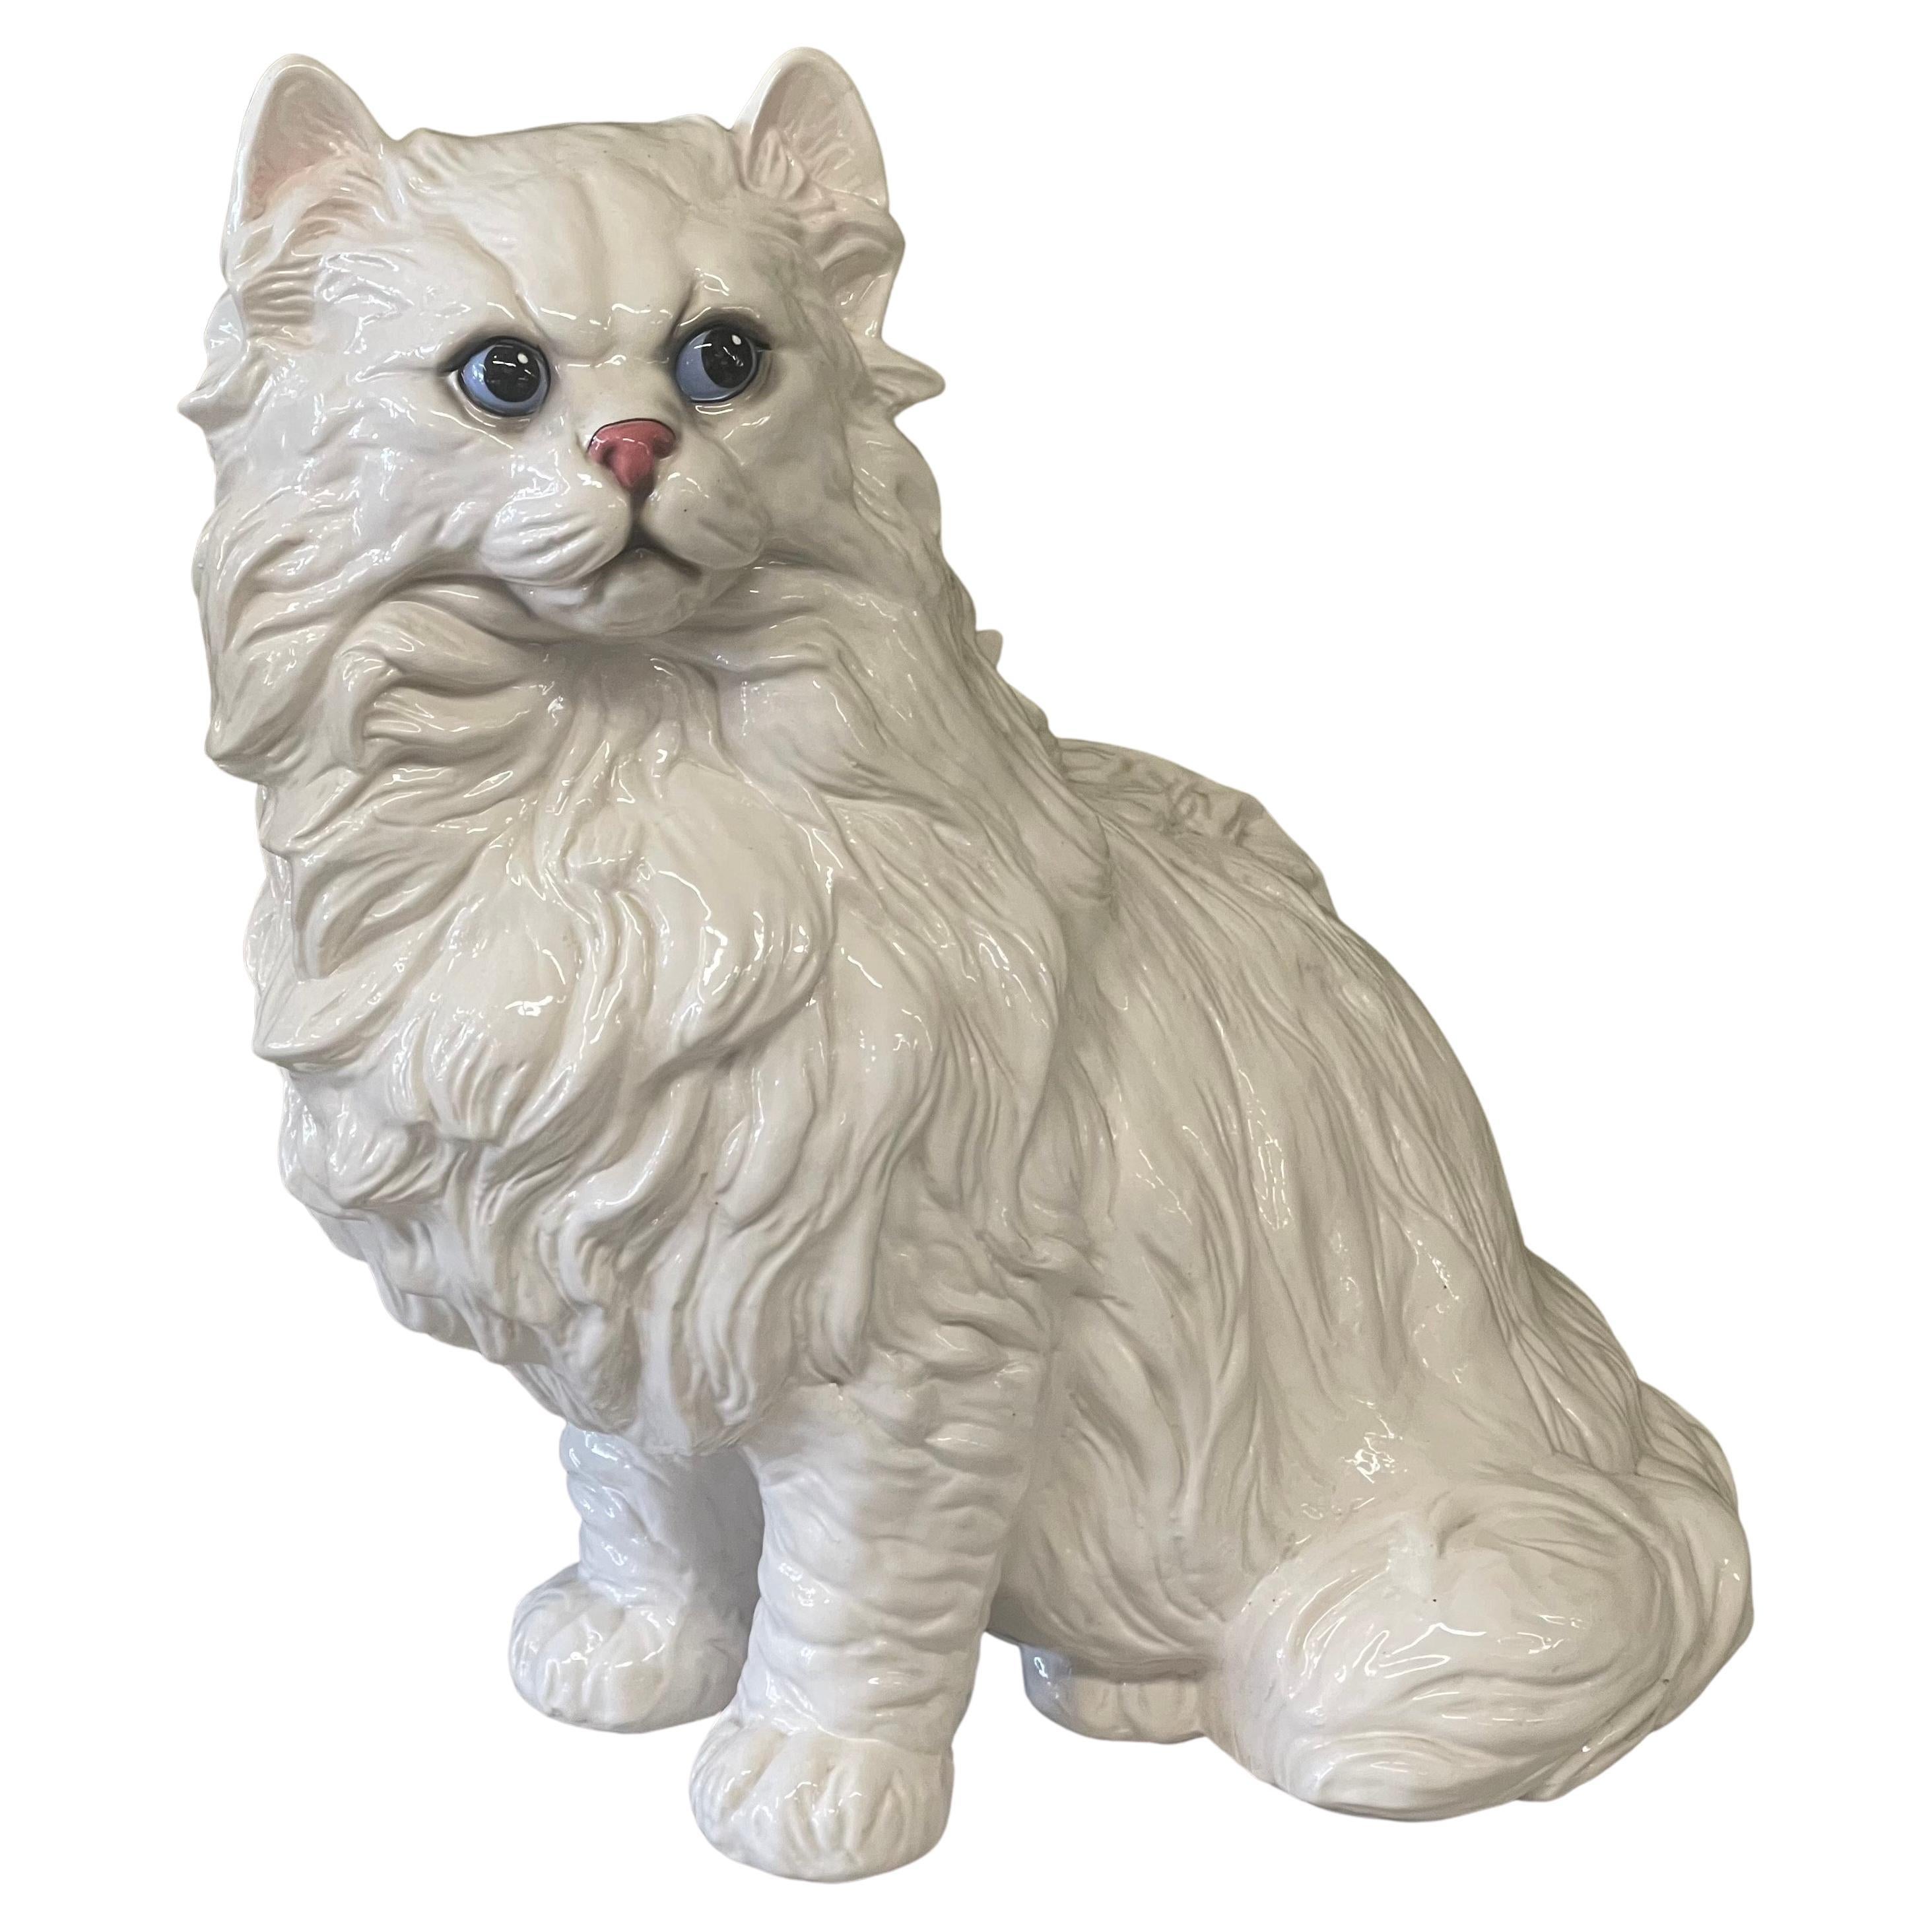 Large Italian Ceramic Cat Sculpture